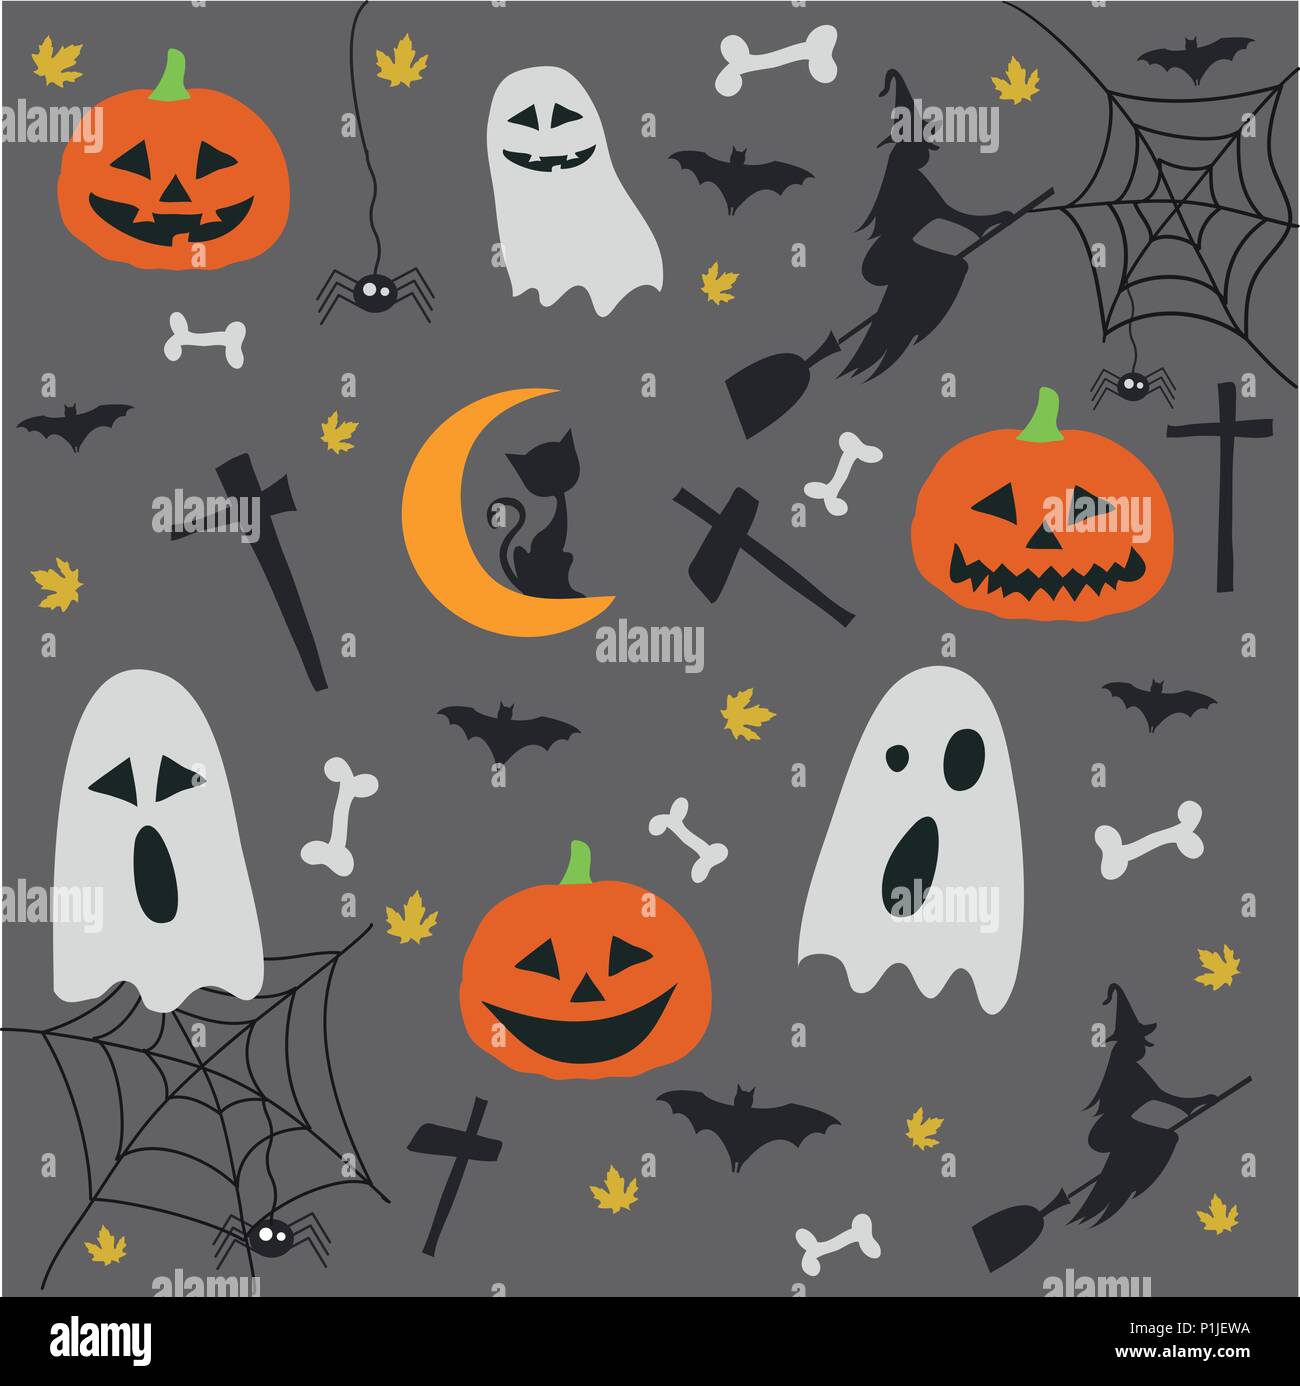 Happy Halloween Wallpaper 79 images